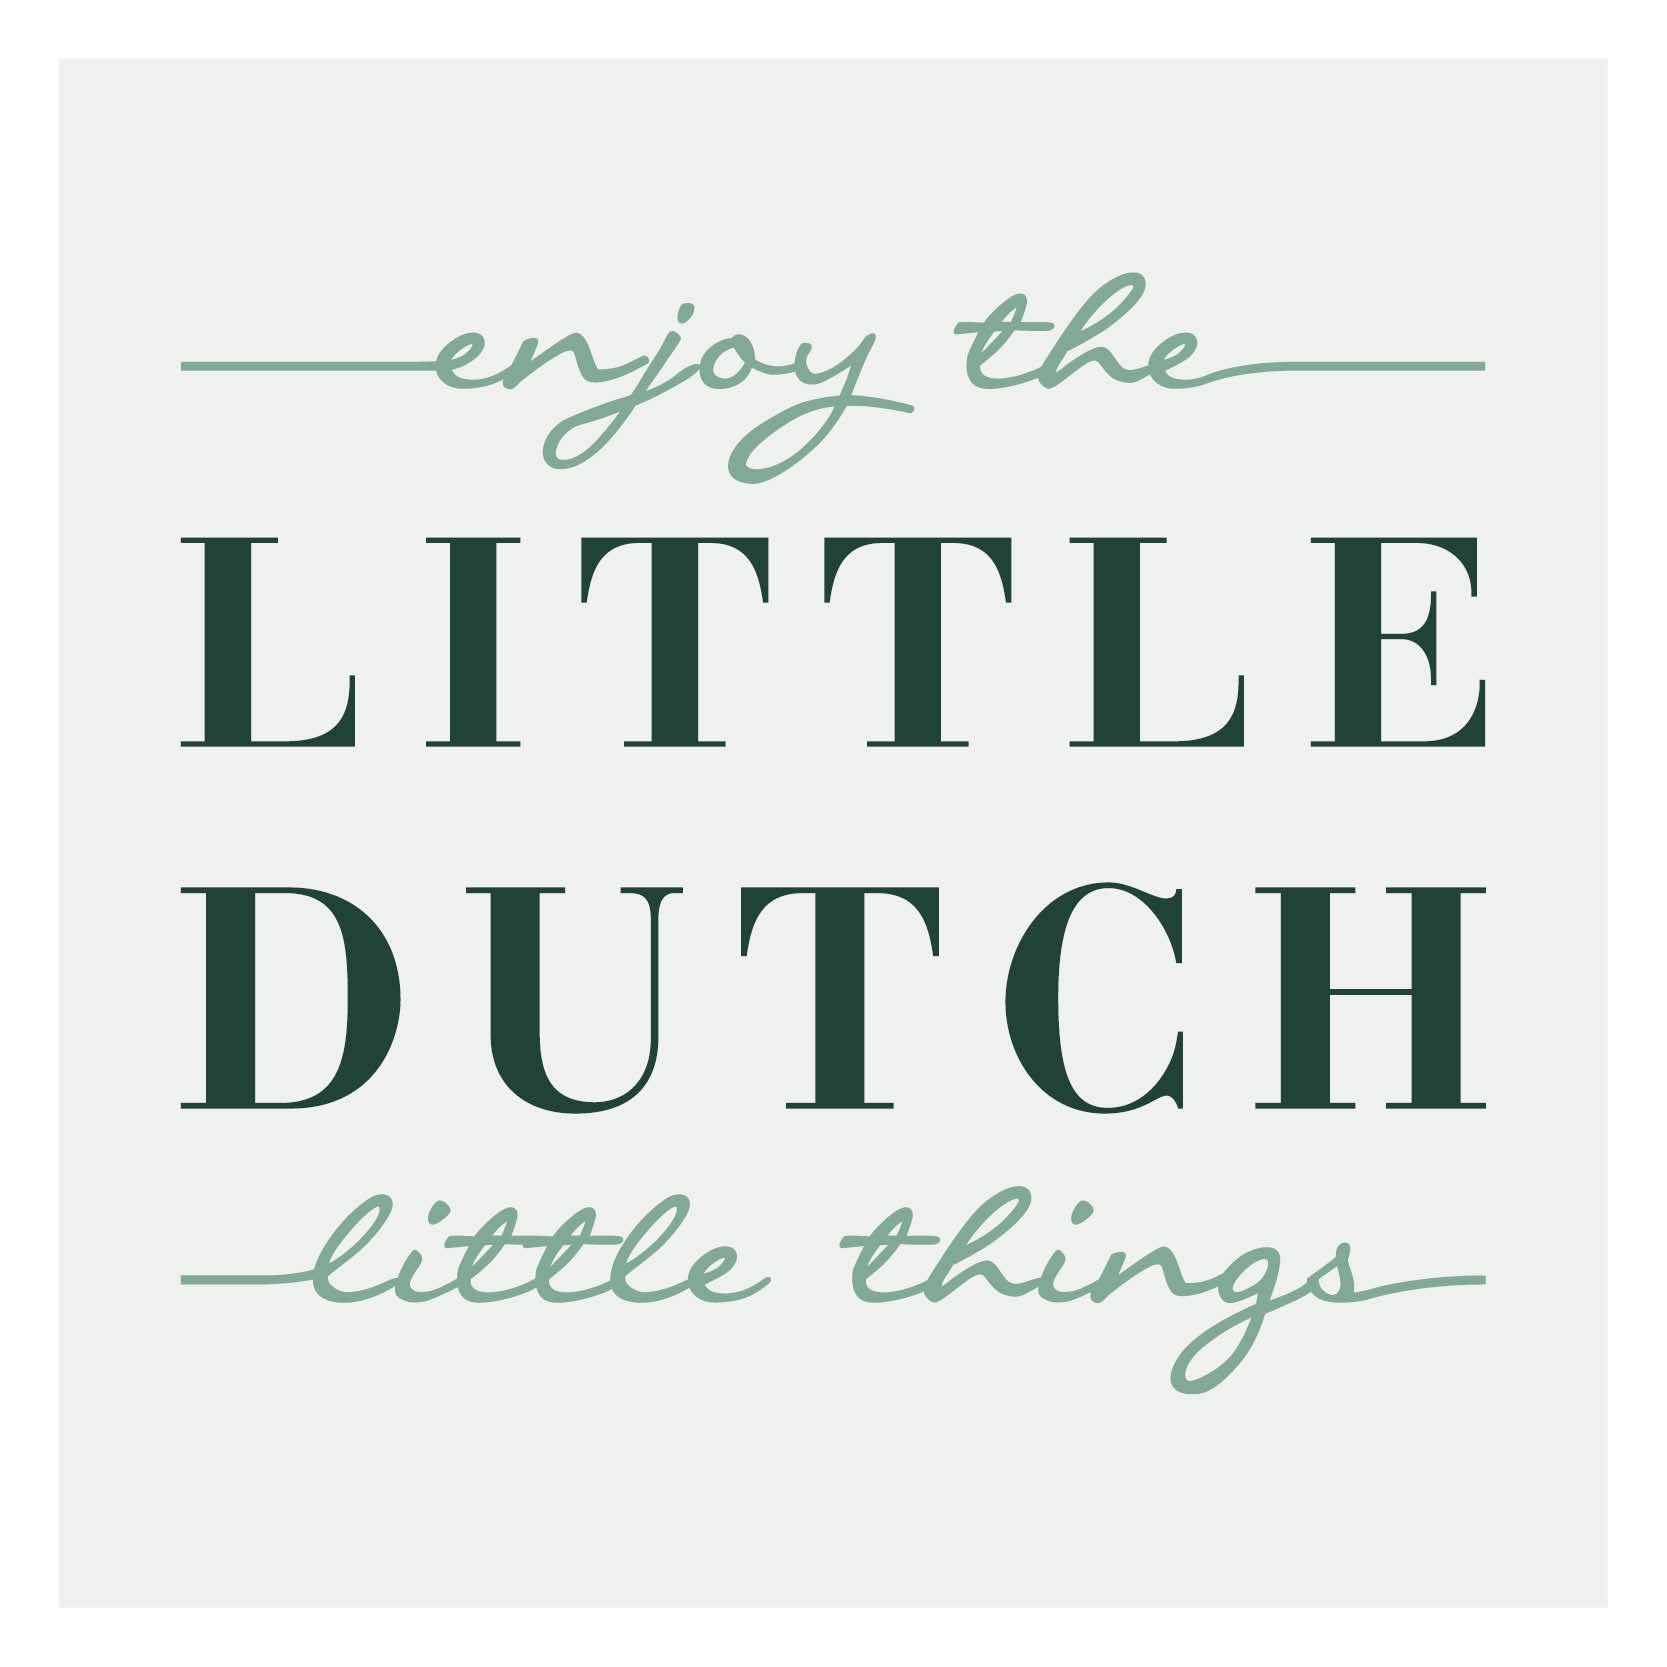 Little Dutch